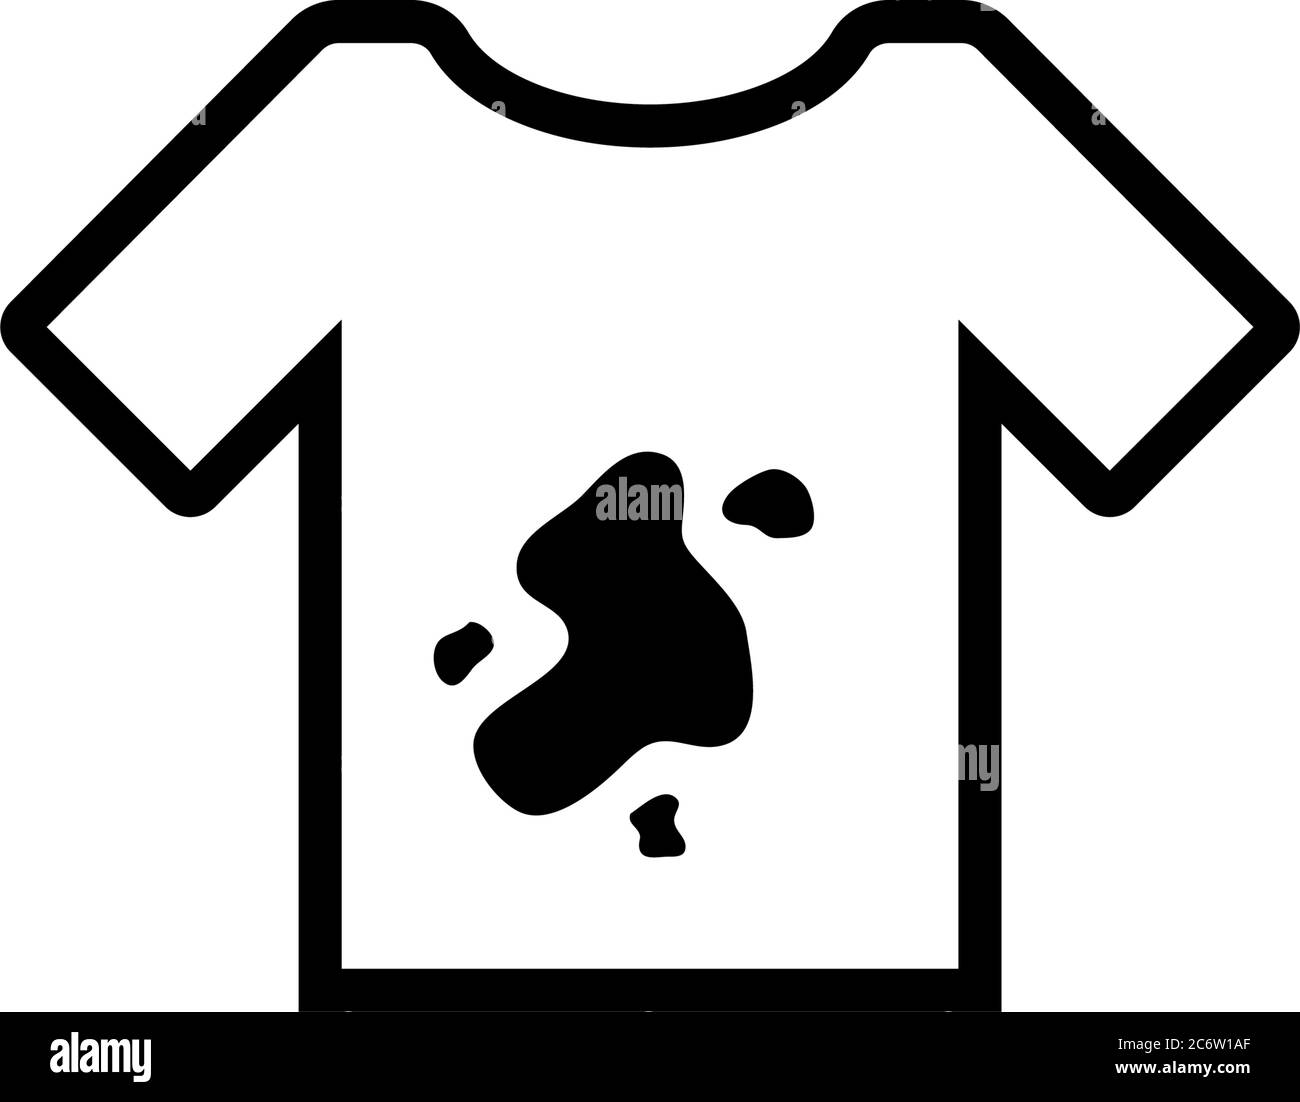 T-Shirt Schmutz. Symbol - flache T-Shirt, schwarzes Alamy weißem Vektorgrafik. Abbildung Flecken T-Shirt Stock-Vektorgrafik T-Shirt, s Schmutziges auf Schmutziges Flecken Hintergrund. Einfaches des mit Schmutz mit für Symbols